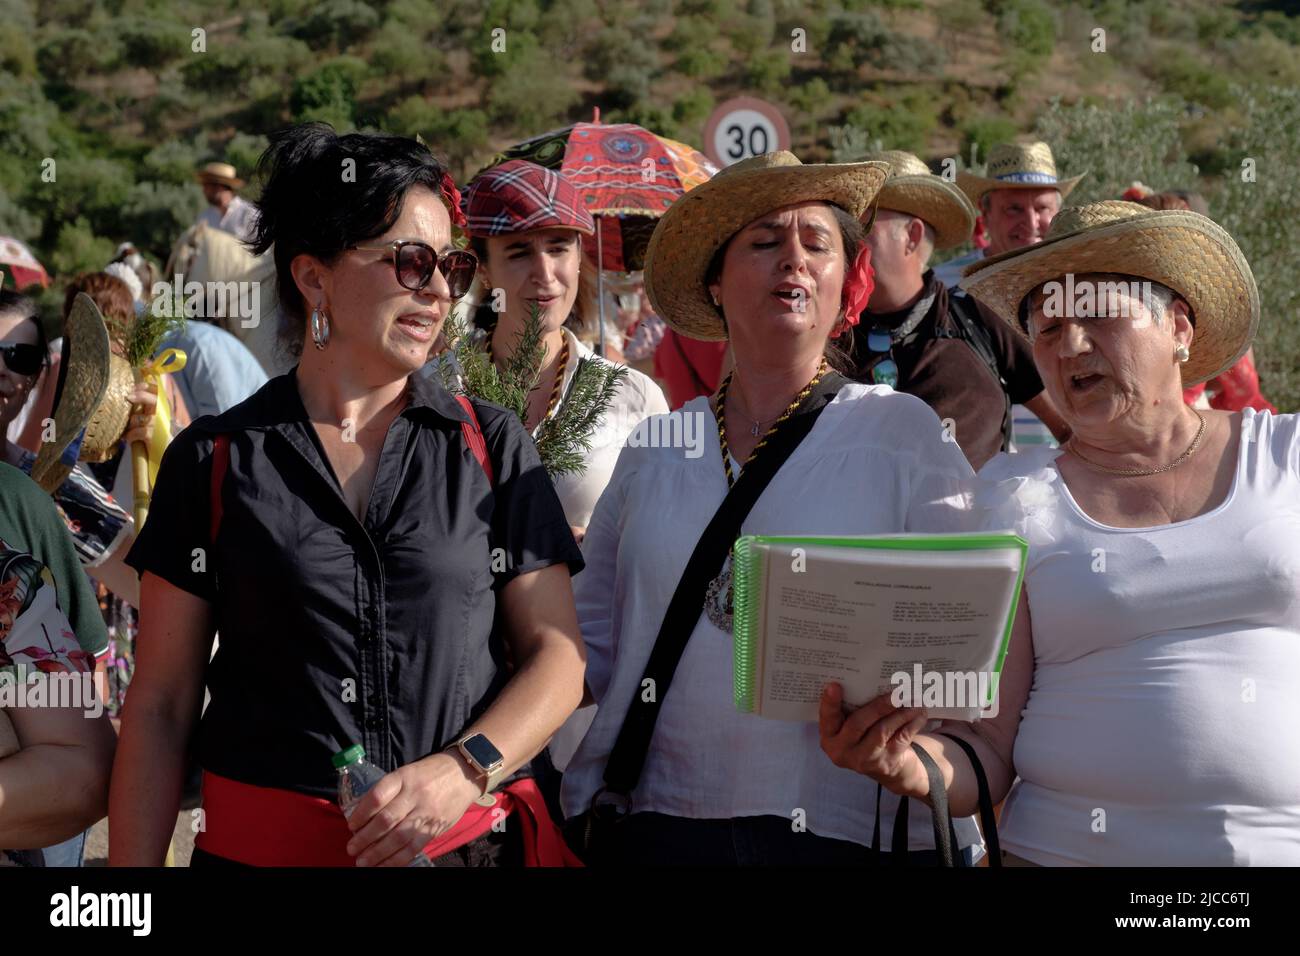 Los aldeanos del pueblo Comares que participan en su romería anual o peregrinaje en la región de Axarquía en Málaga, Andalucía, España Foto de stock